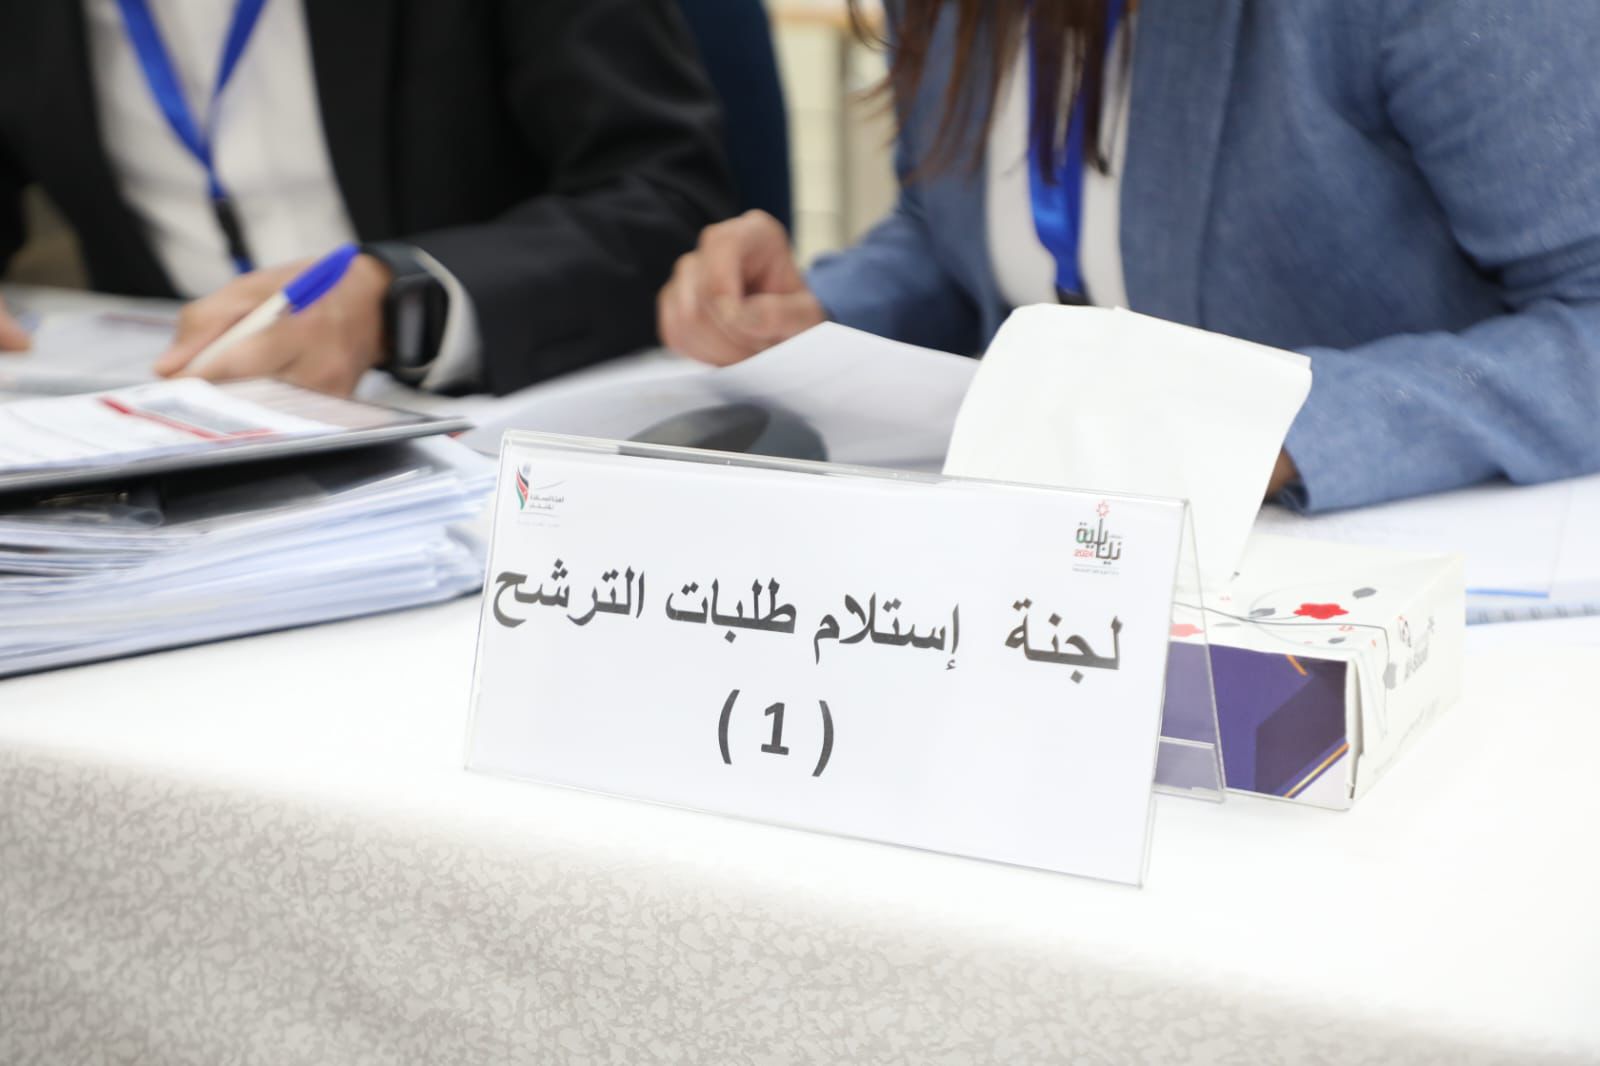 الميثاق أول قائمة حزبية تنهي رسميا إجراءات الترشح للإنتخابات النيابية المقبلة